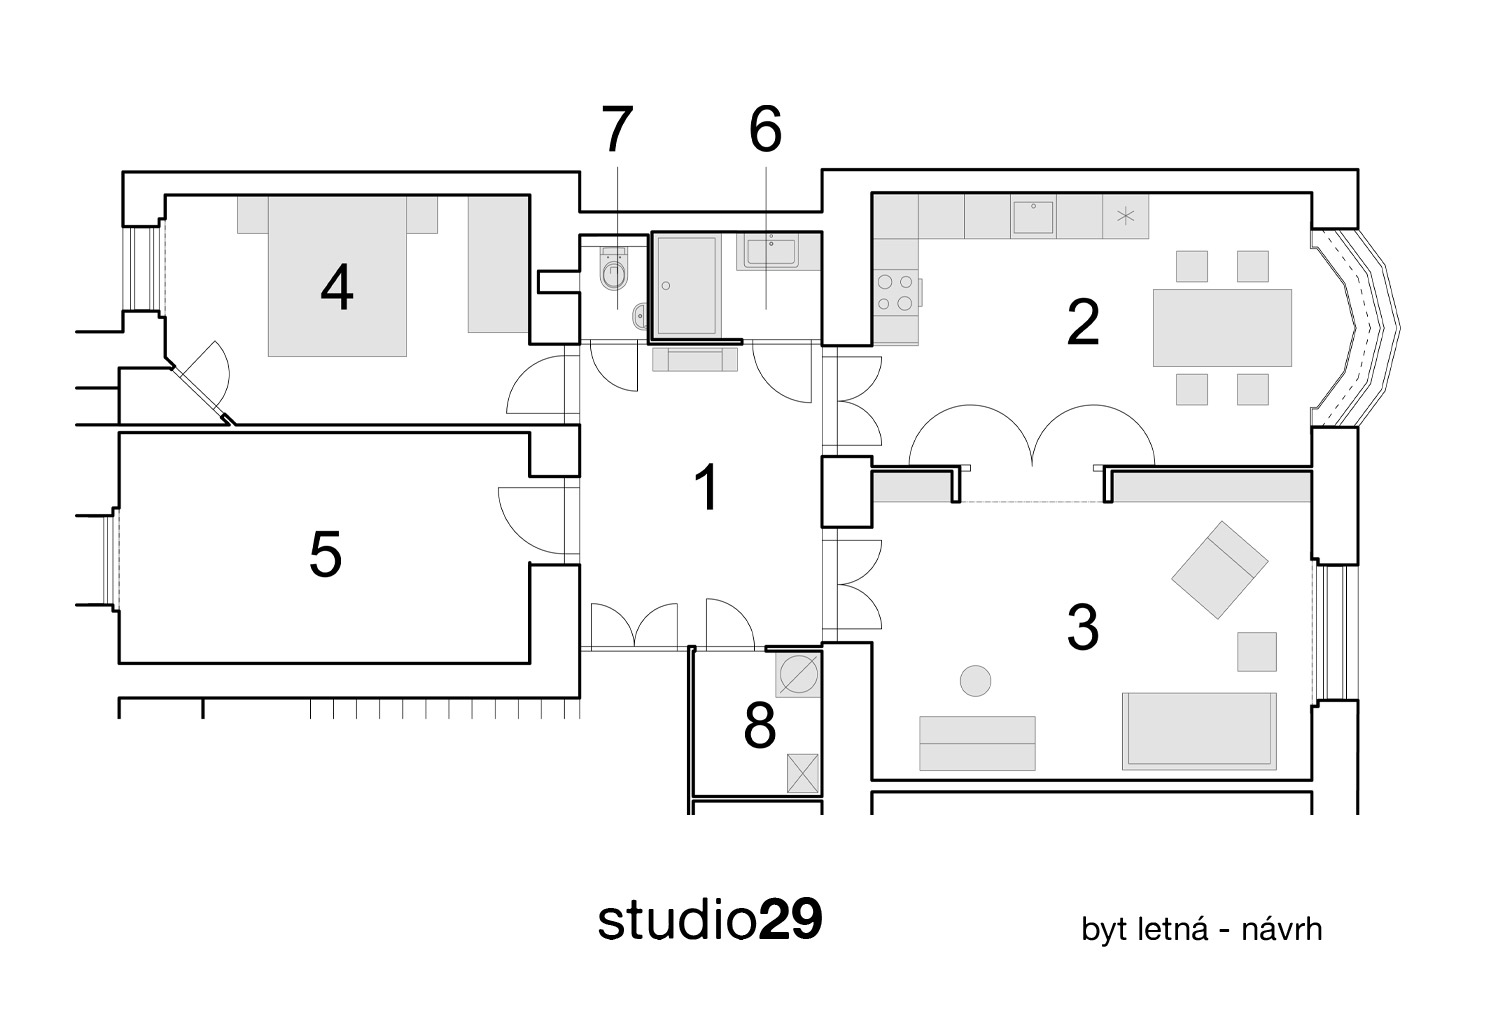 Půdorys po přestavbě: 1 - vstupní hala, 2 - kuchyně s jídelnou, 3 - obývací pokoj, 4 - ložnice, 5 - budoucí dětský pokoj, 6 - koupelna, 7 - WC, 8 - technická místnost